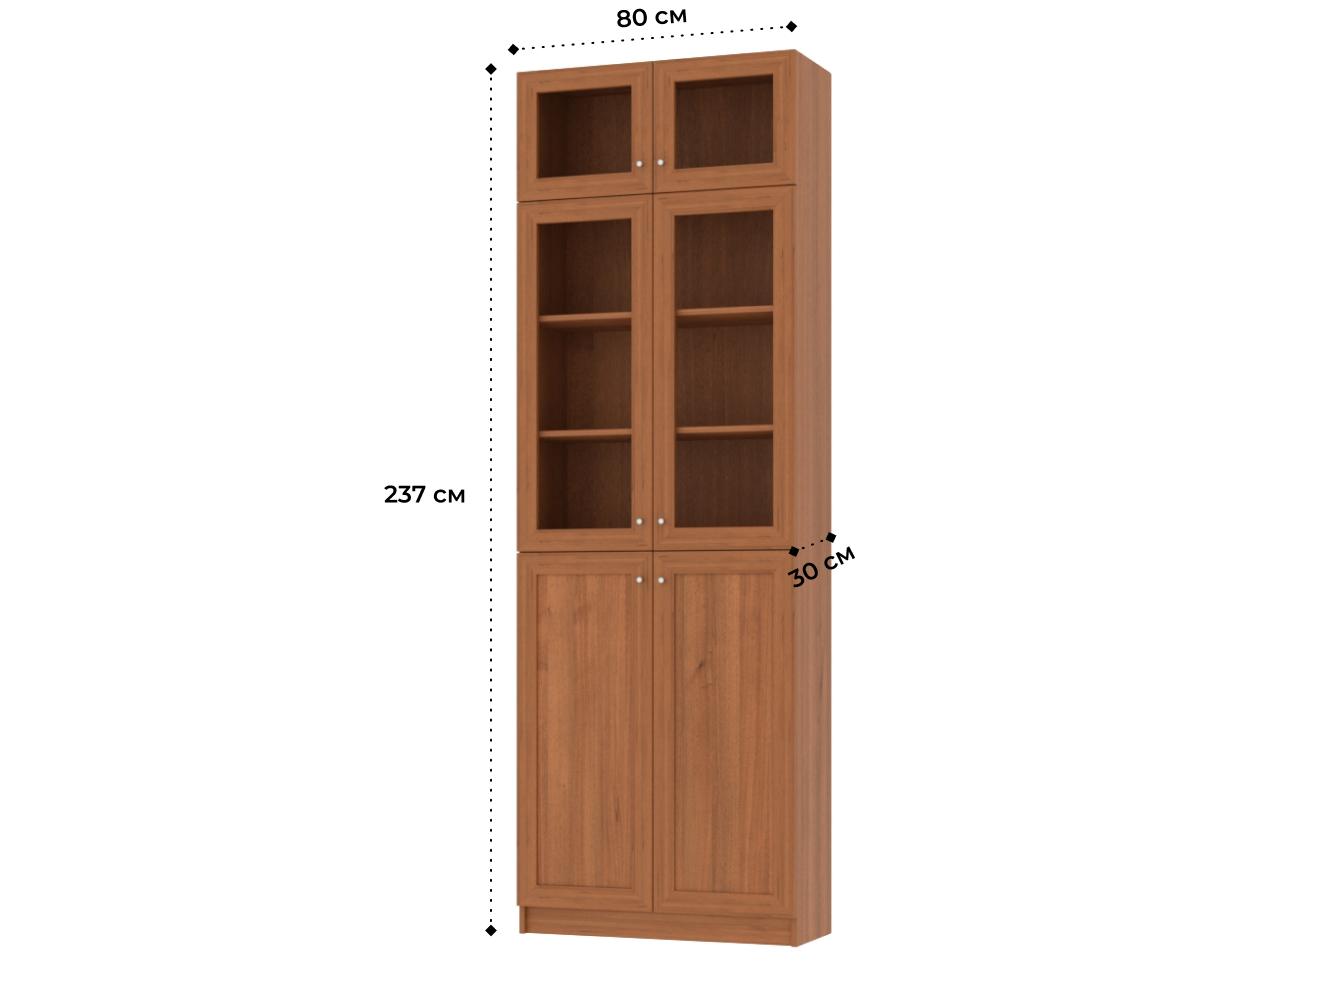 Книжный шкаф Билли 352 walnut guarneri ИКЕА (IKEA) изображение товара